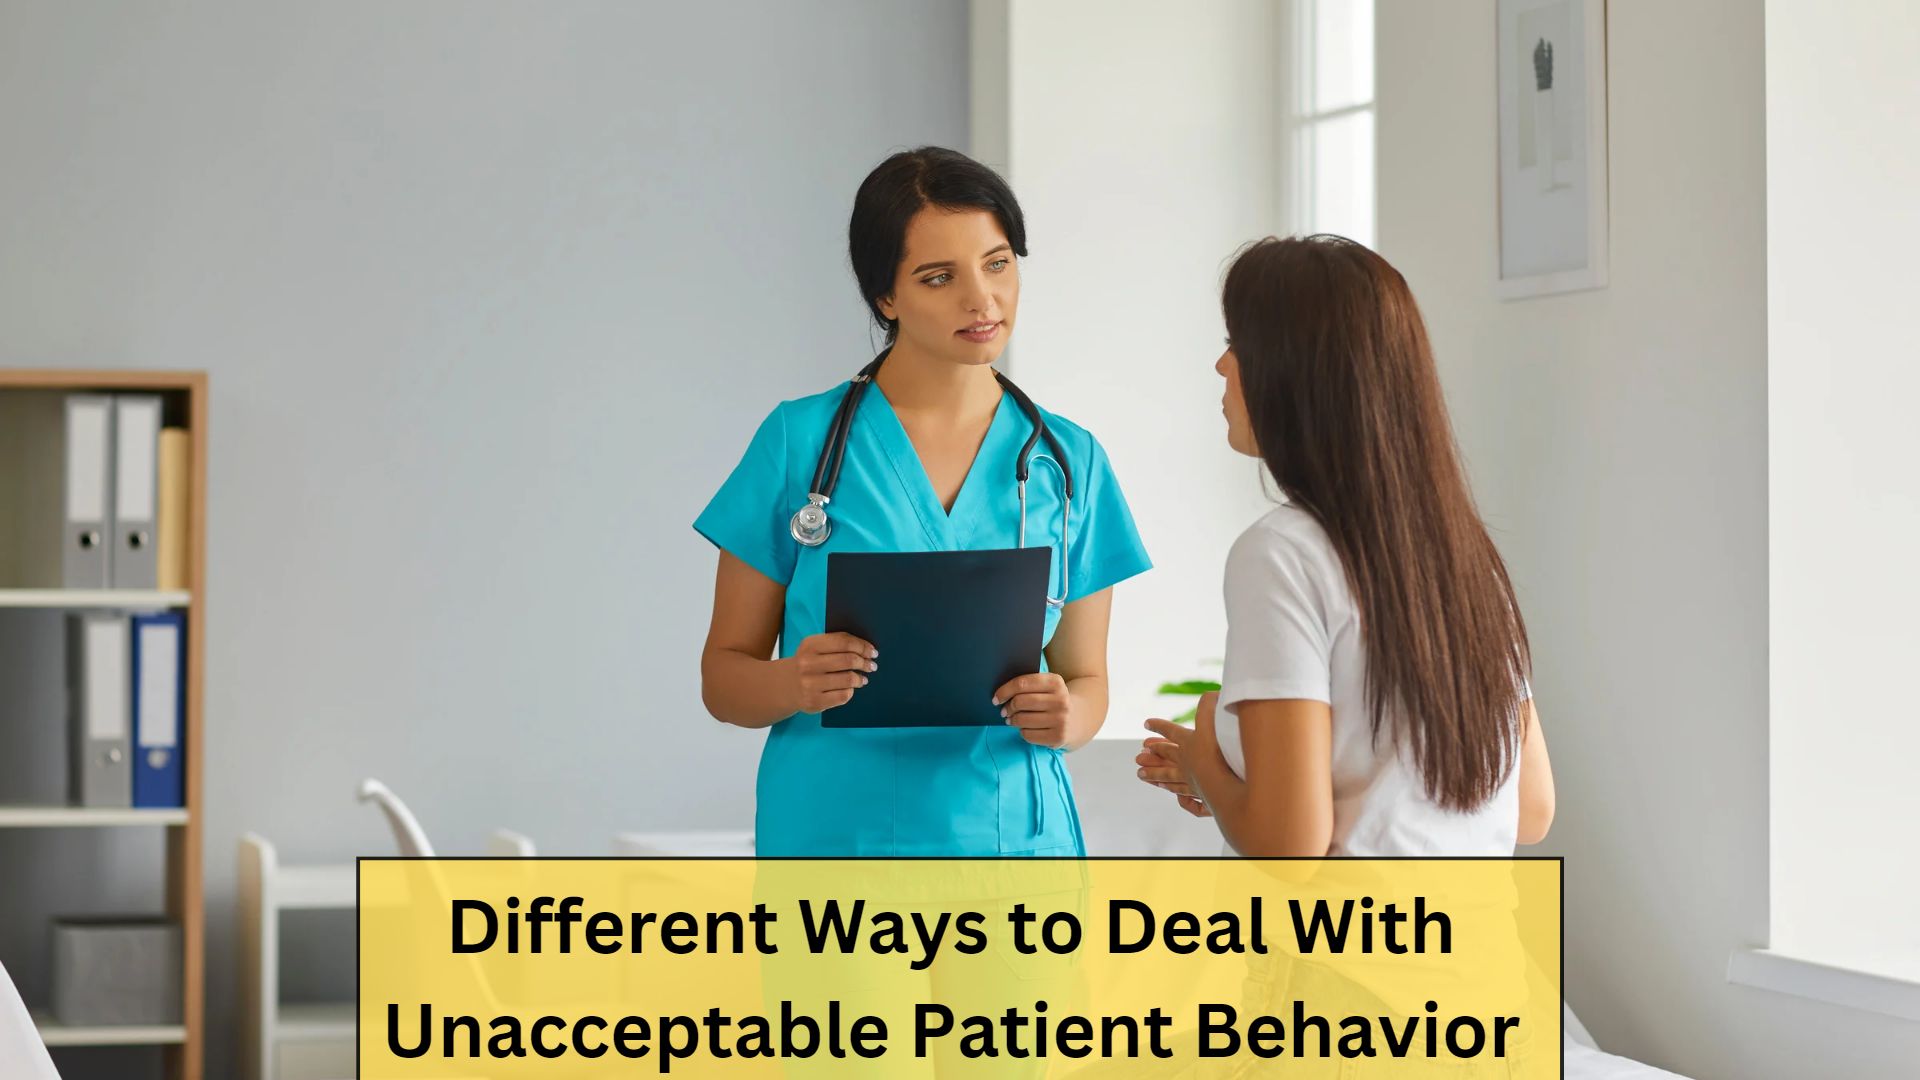 Ways to Deal With Unacceptable Patient Behavior